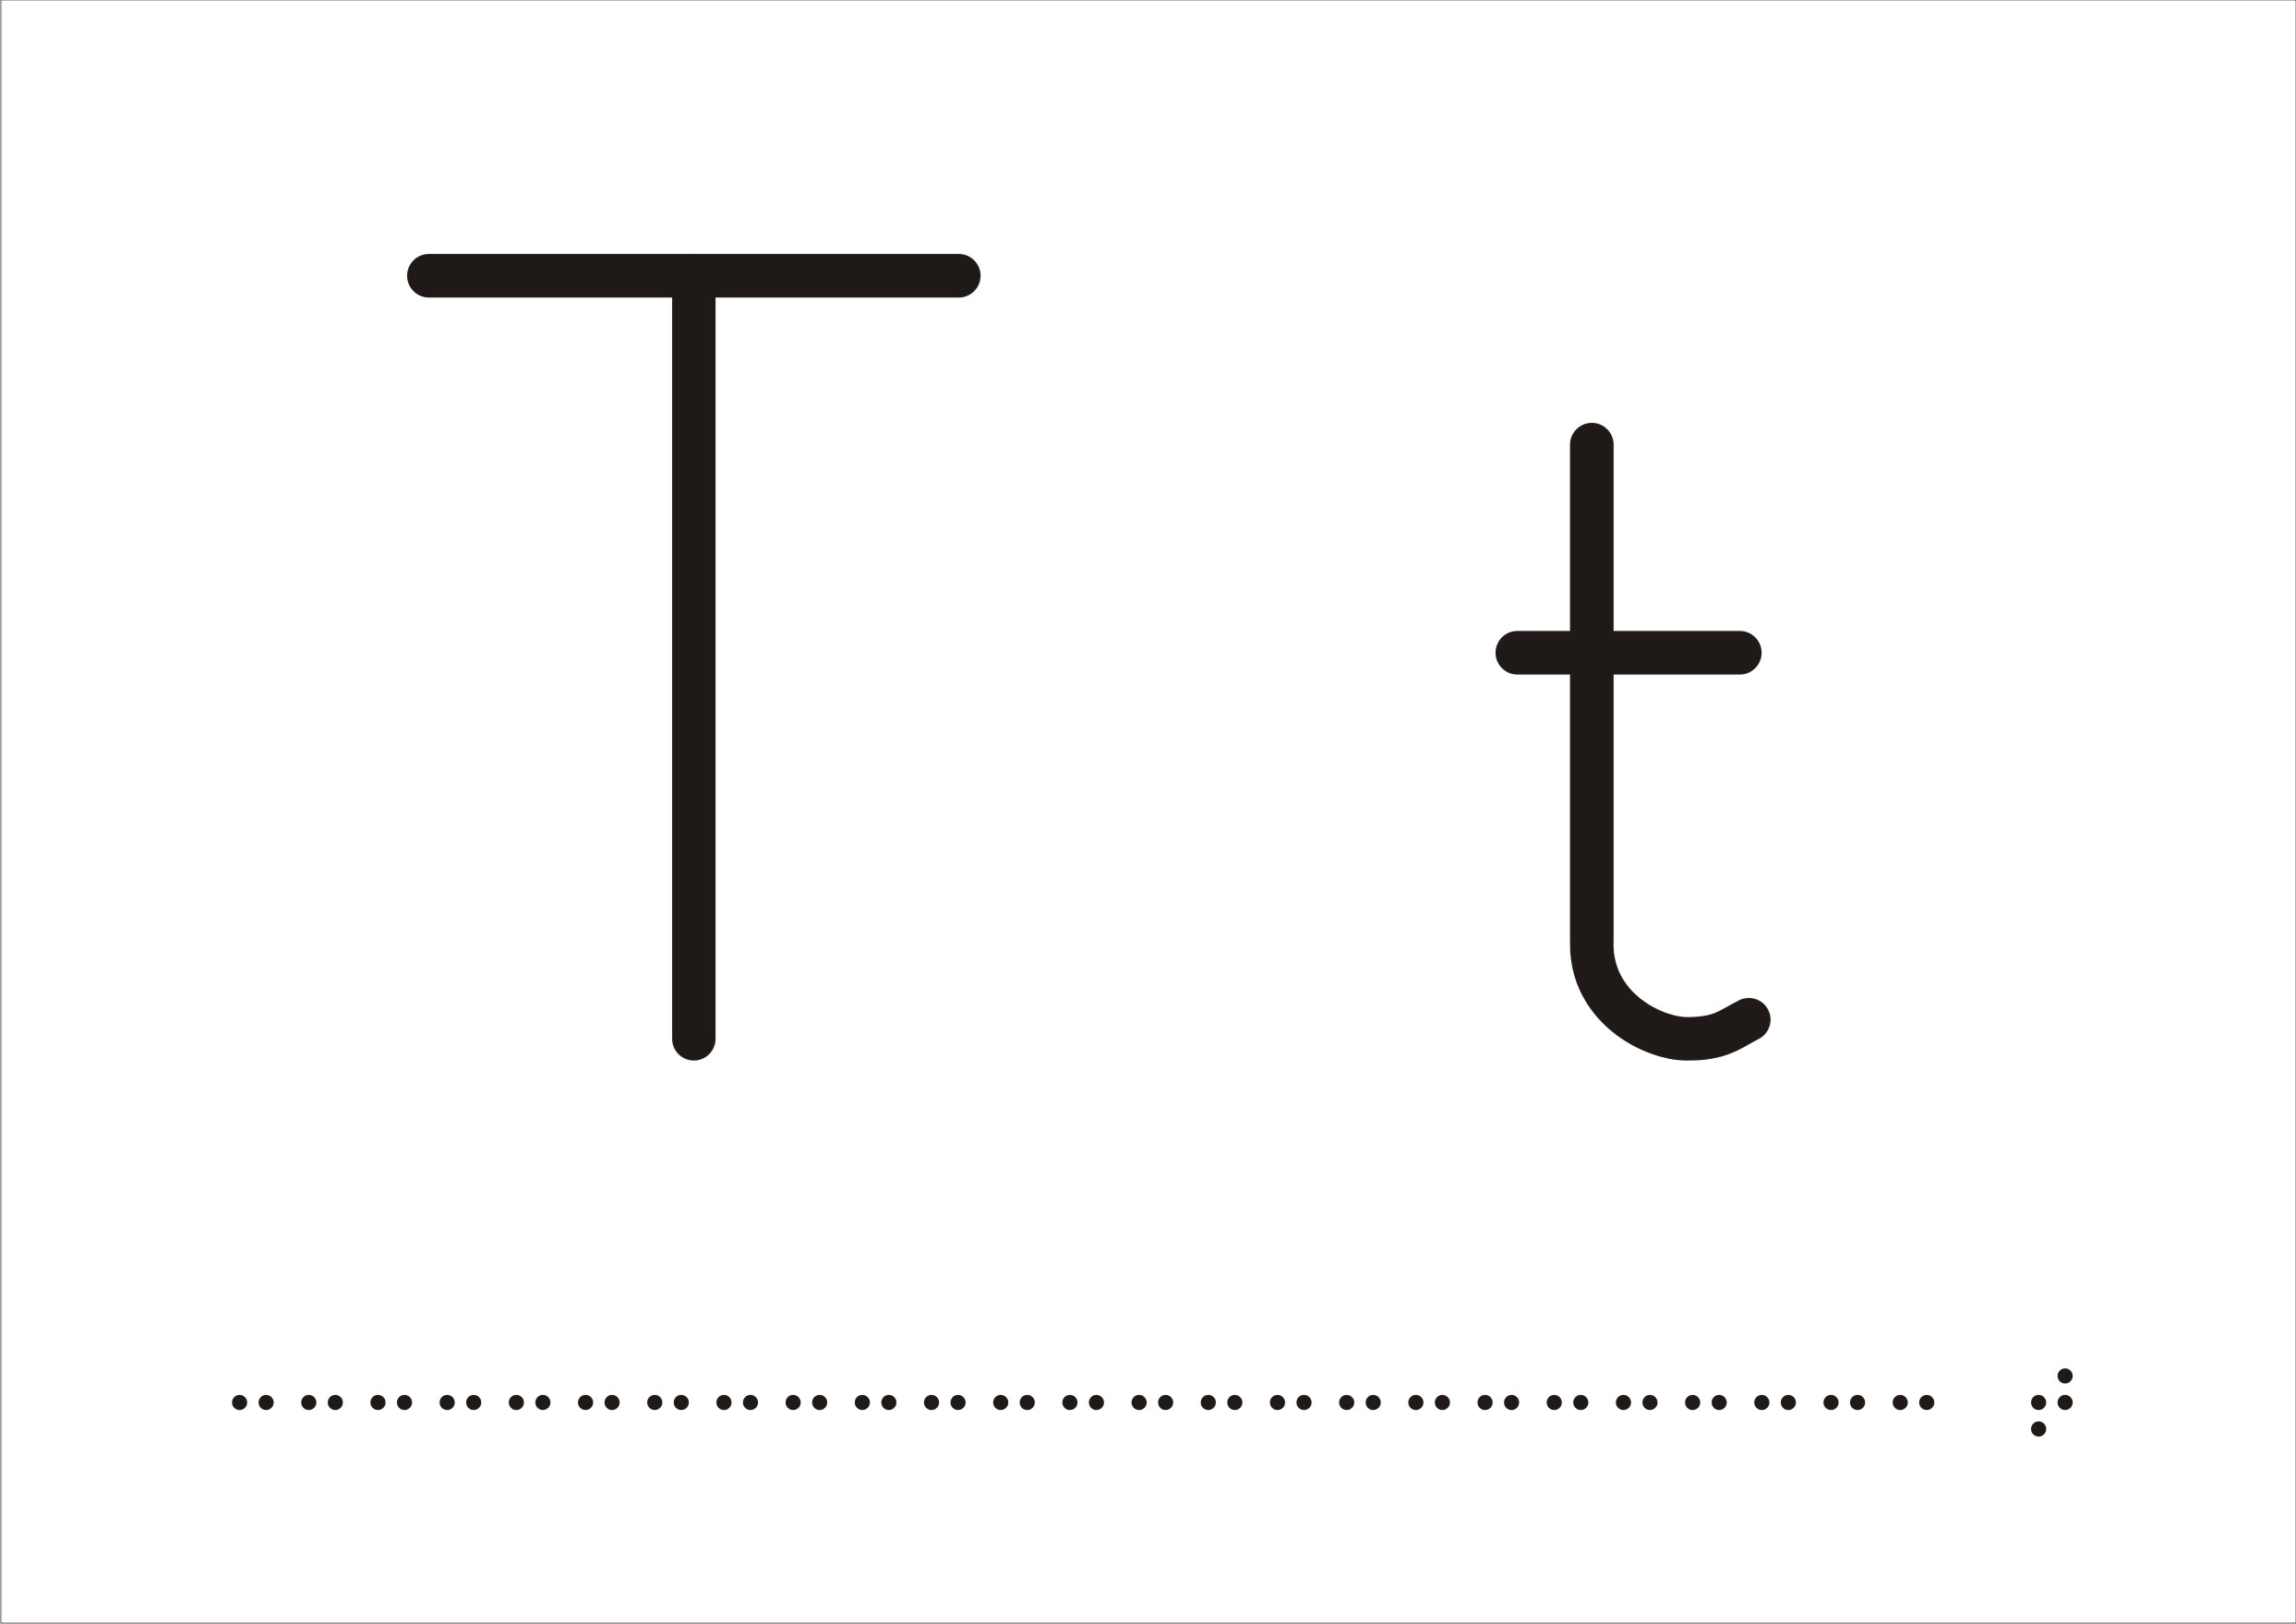 Stort T och litet T på vit bakgrund understruket av punktskrift.